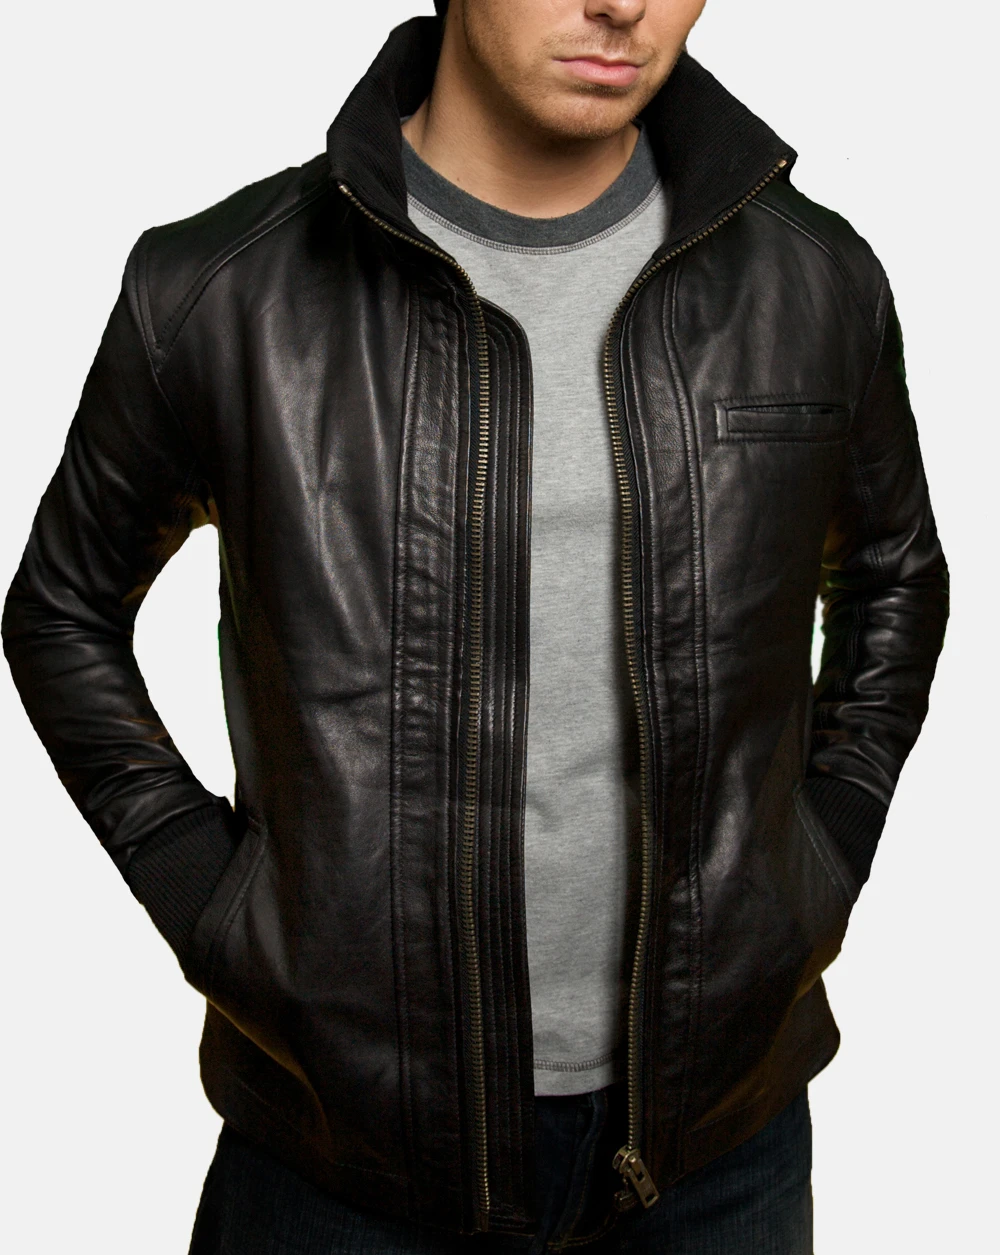 Stylish slim fit men leather jacket